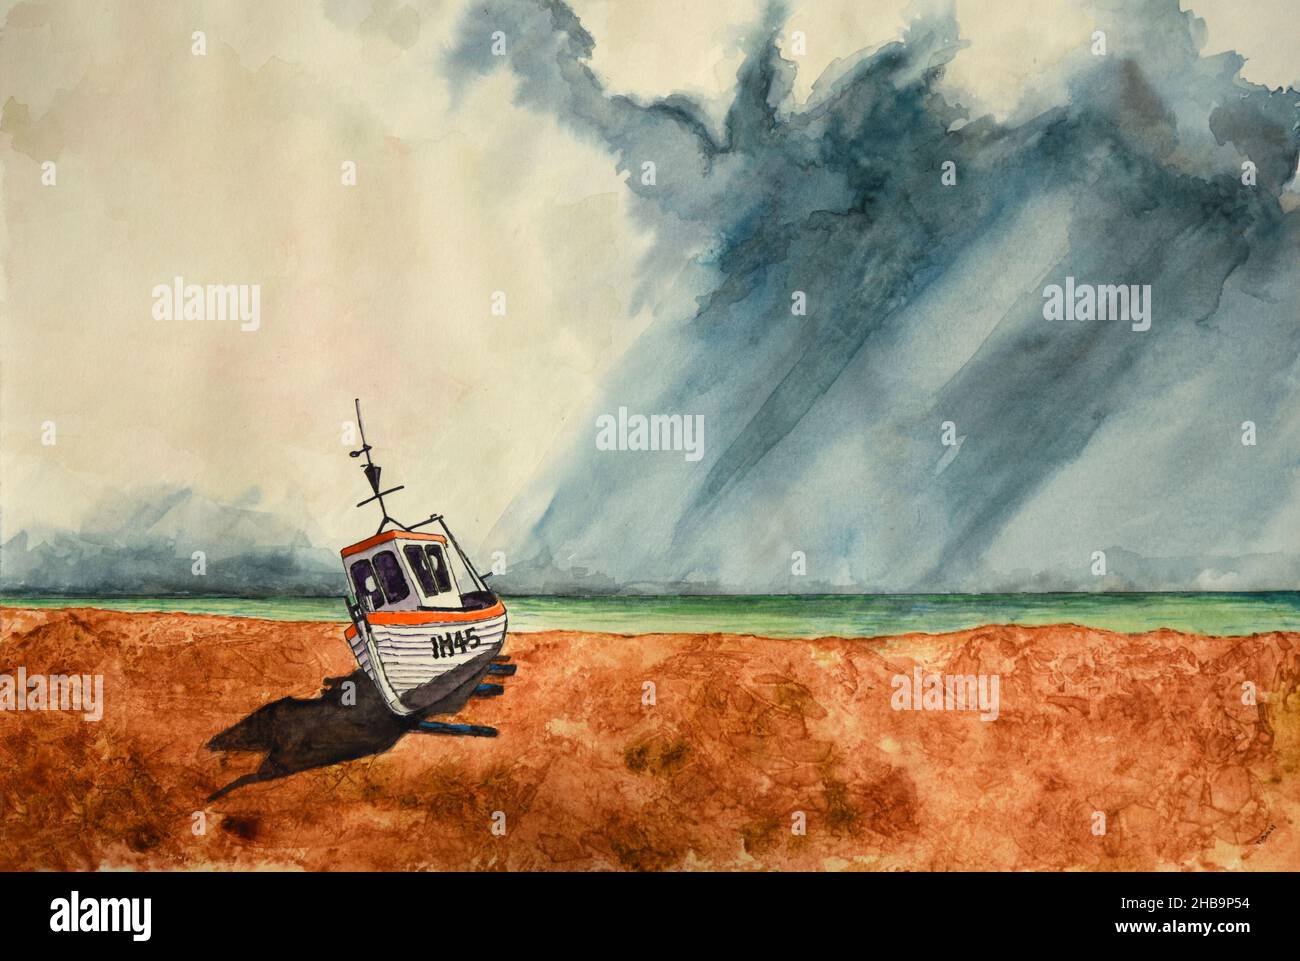 Peinture aquarelle du bateau de pêche sur la plage avec ciel orageux. Banque D'Images